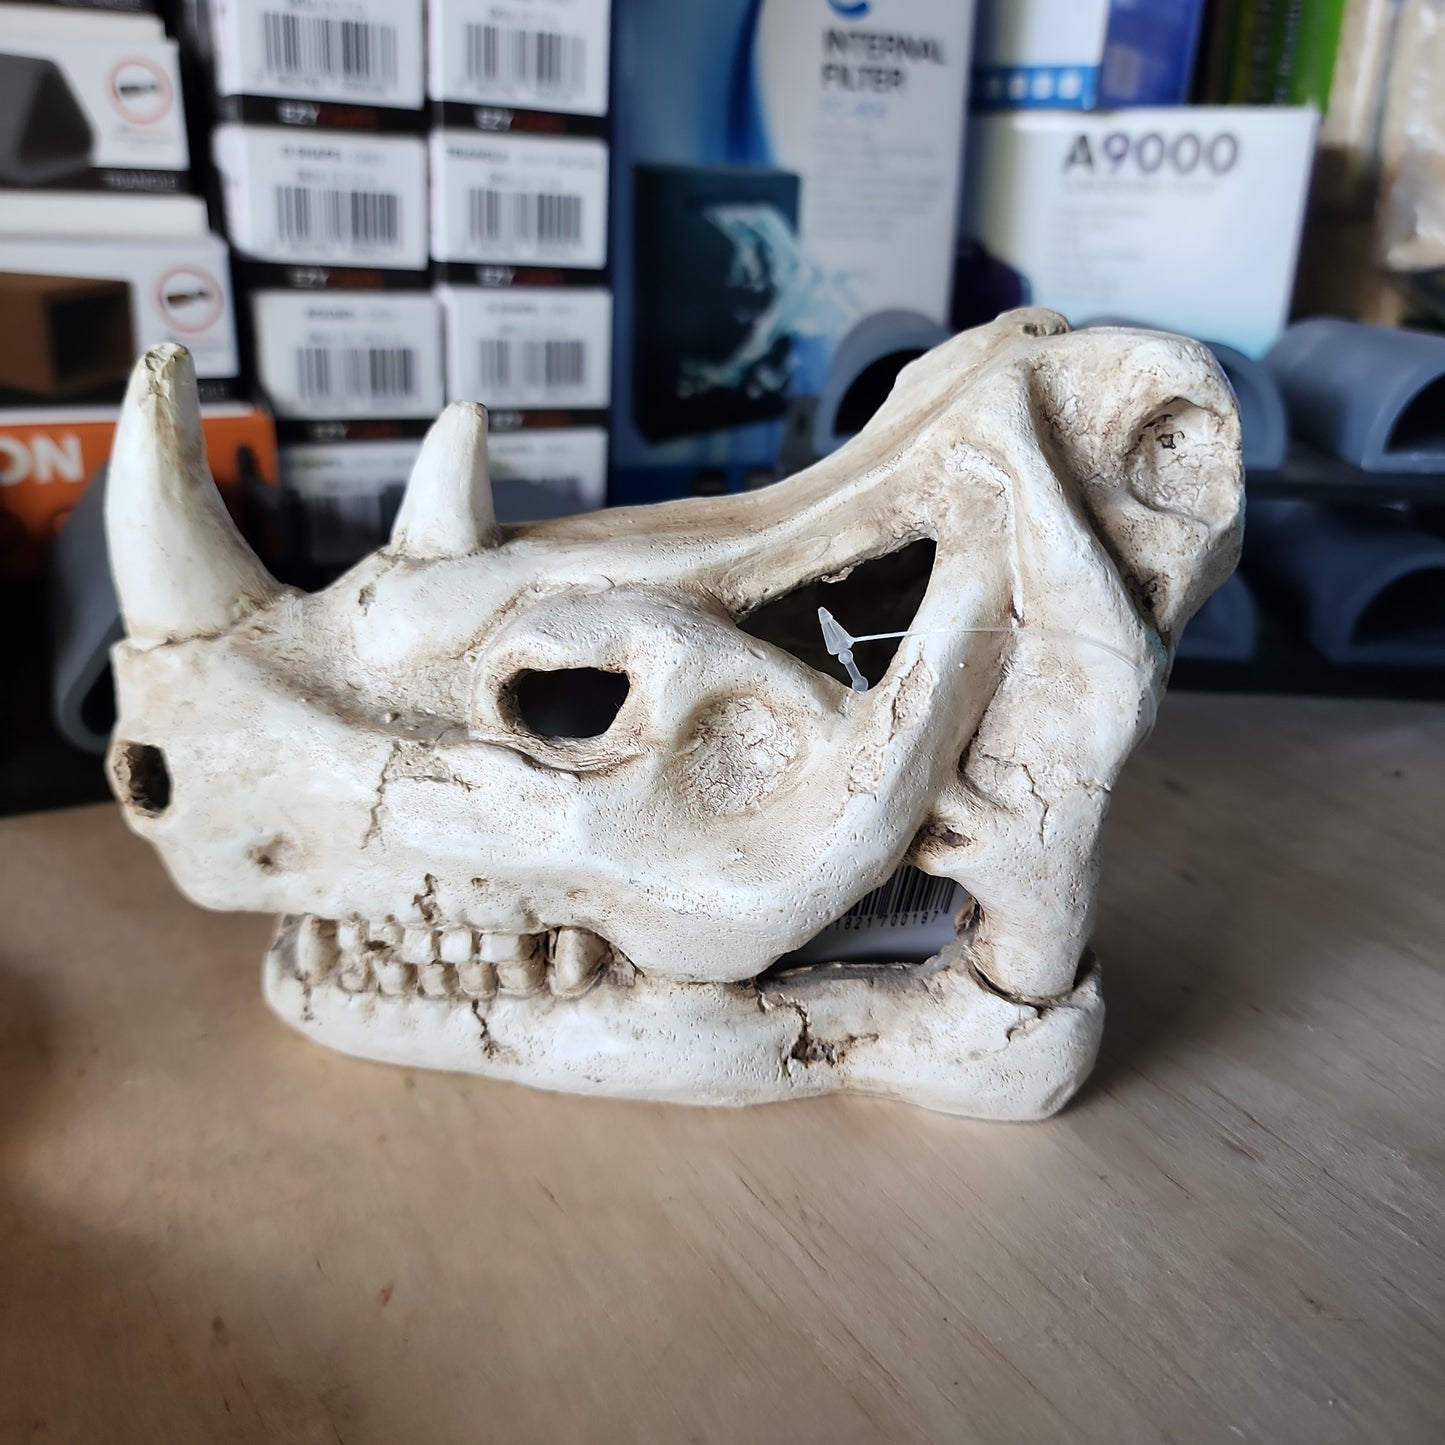 Decorative rhino skull